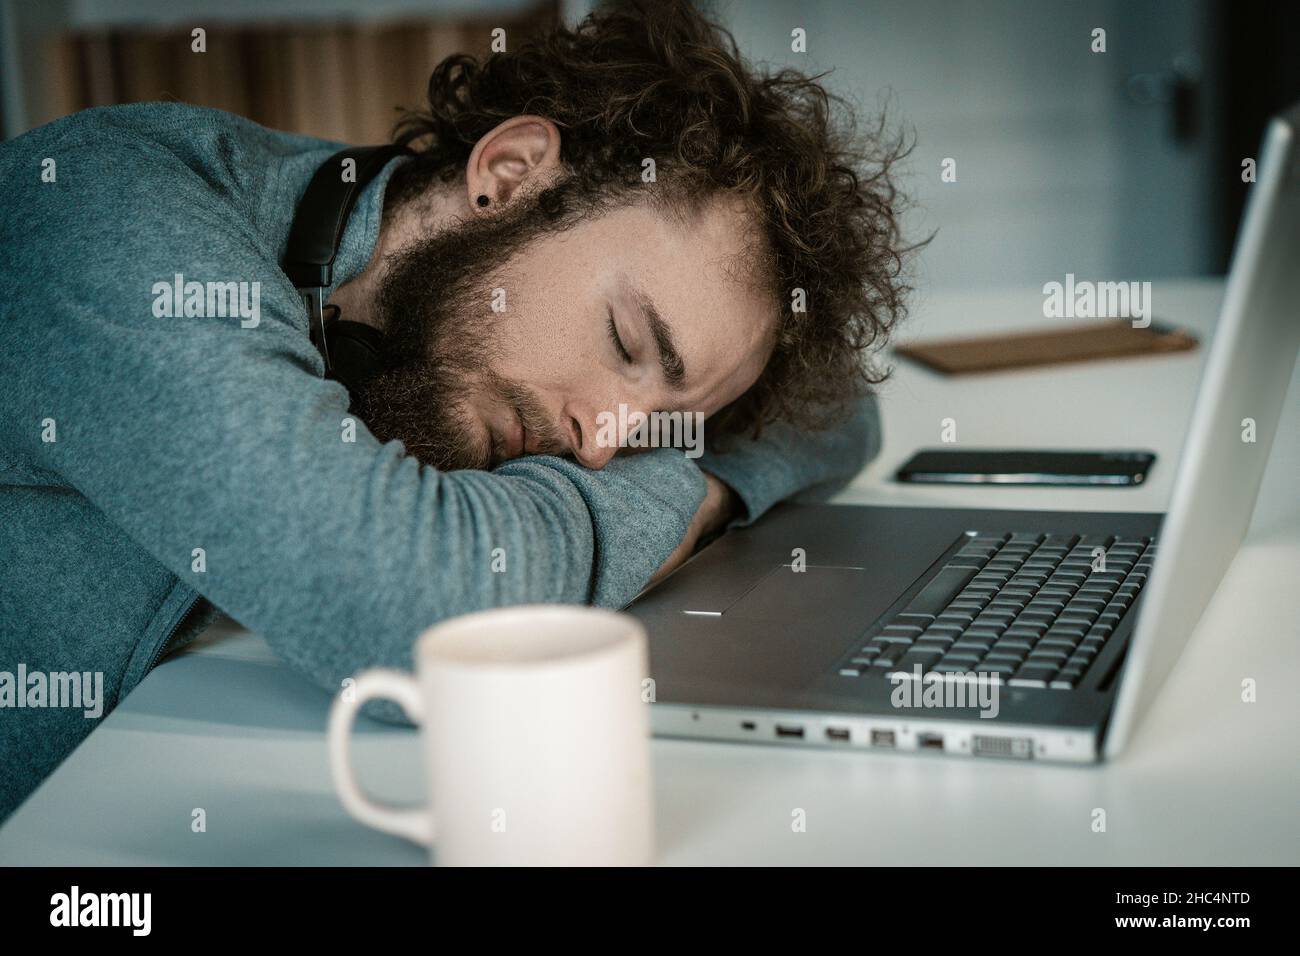 L'uomo con le mani ripiegate dorme sulla scrivania con il laptop. Dormi seduto, Freelance di notte, tazza di caffè sul tavolo. Primo piano. Foto di alta qualità Foto Stock